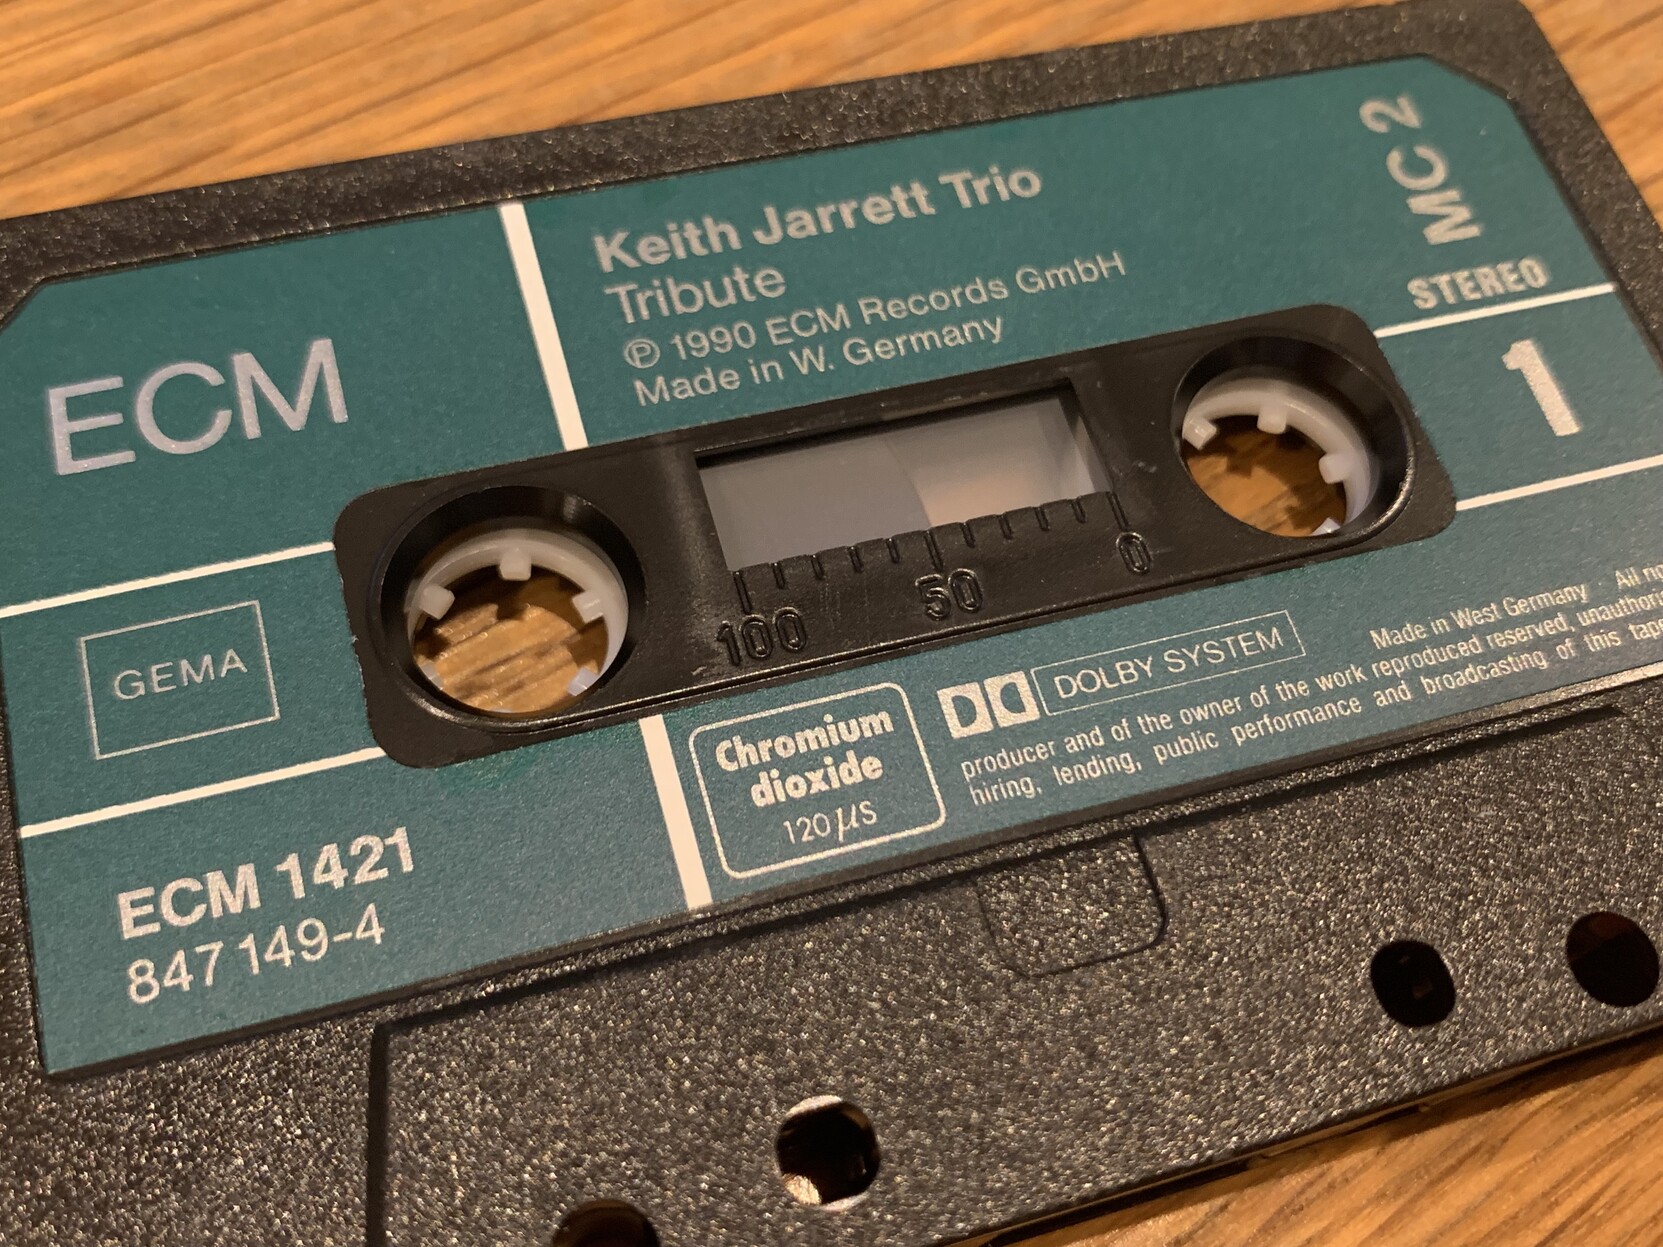 A compact cassette 